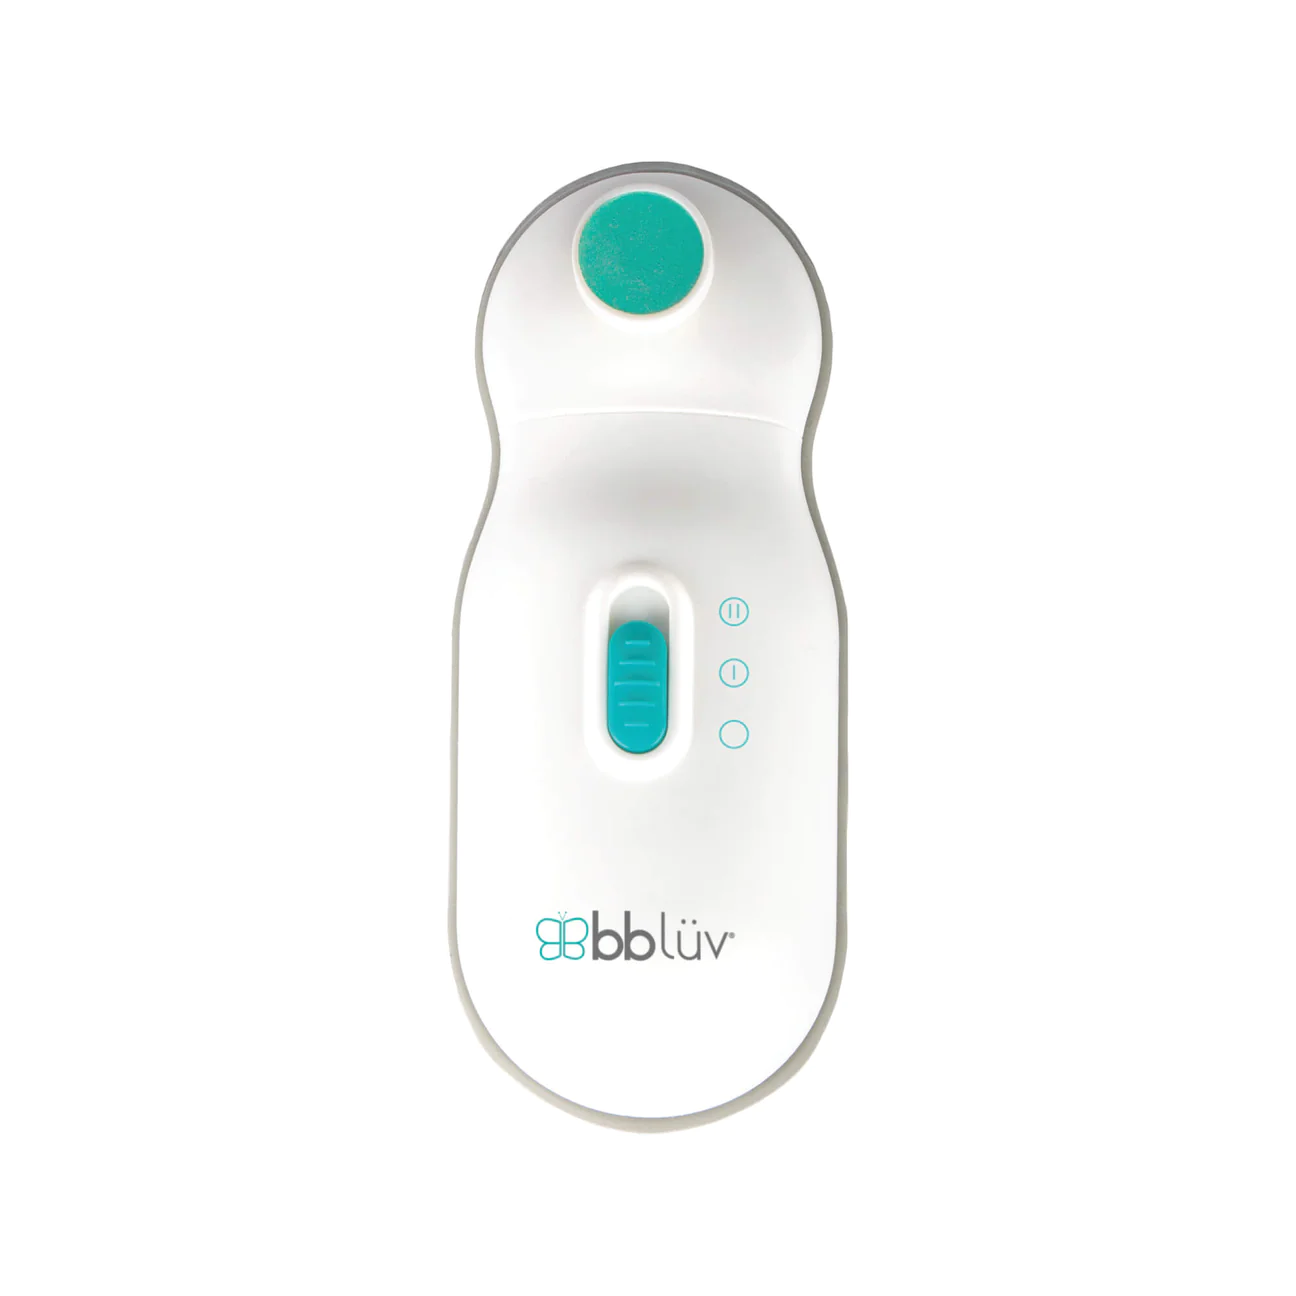 bblüv - Trimö - Coupe-ongles électrique pour bébé 